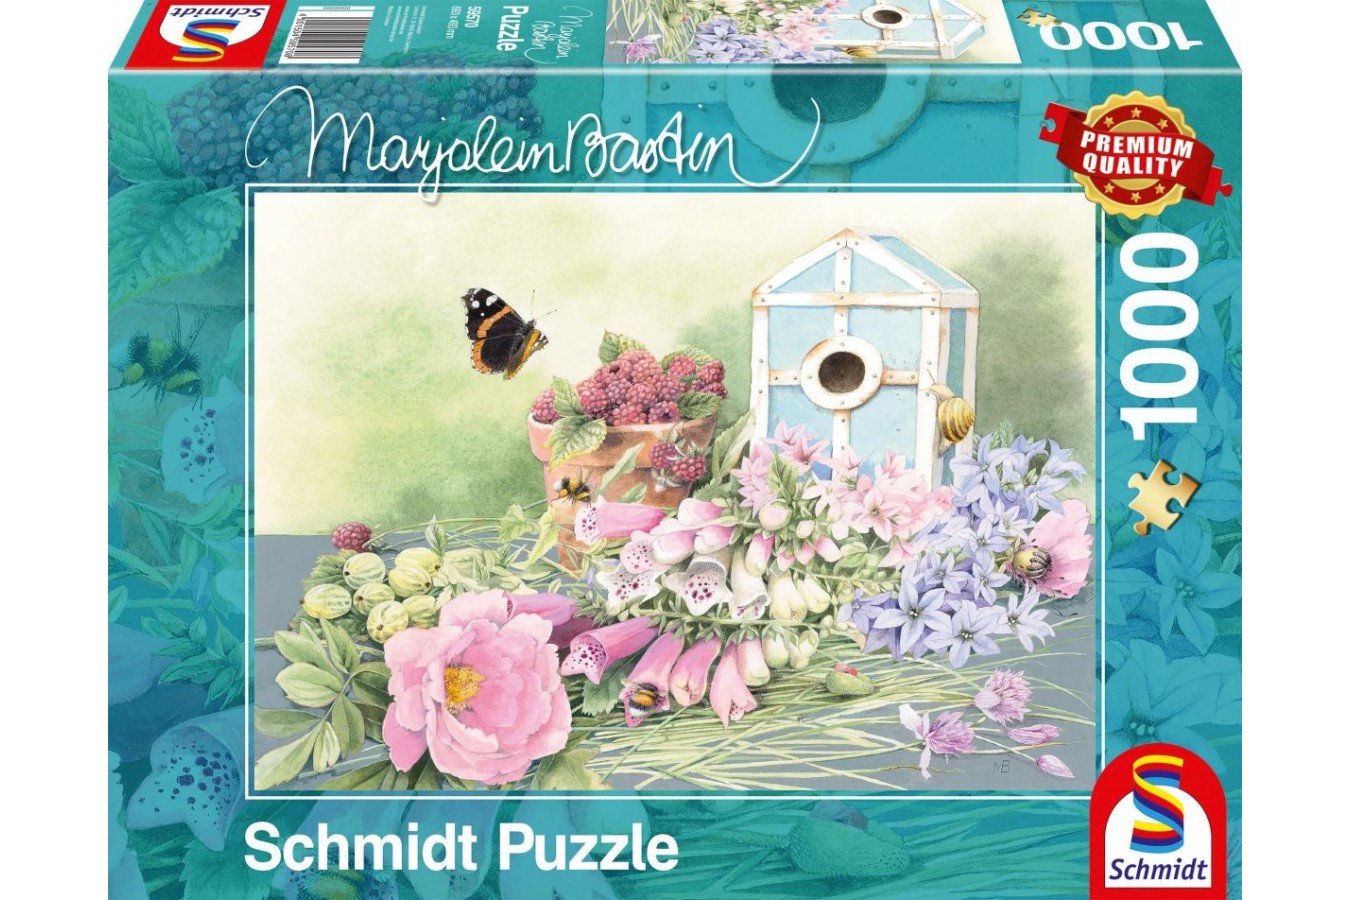 Puzzle Schmidt - Marjolein Bastin: Summer Home, 1000 piese (59570)